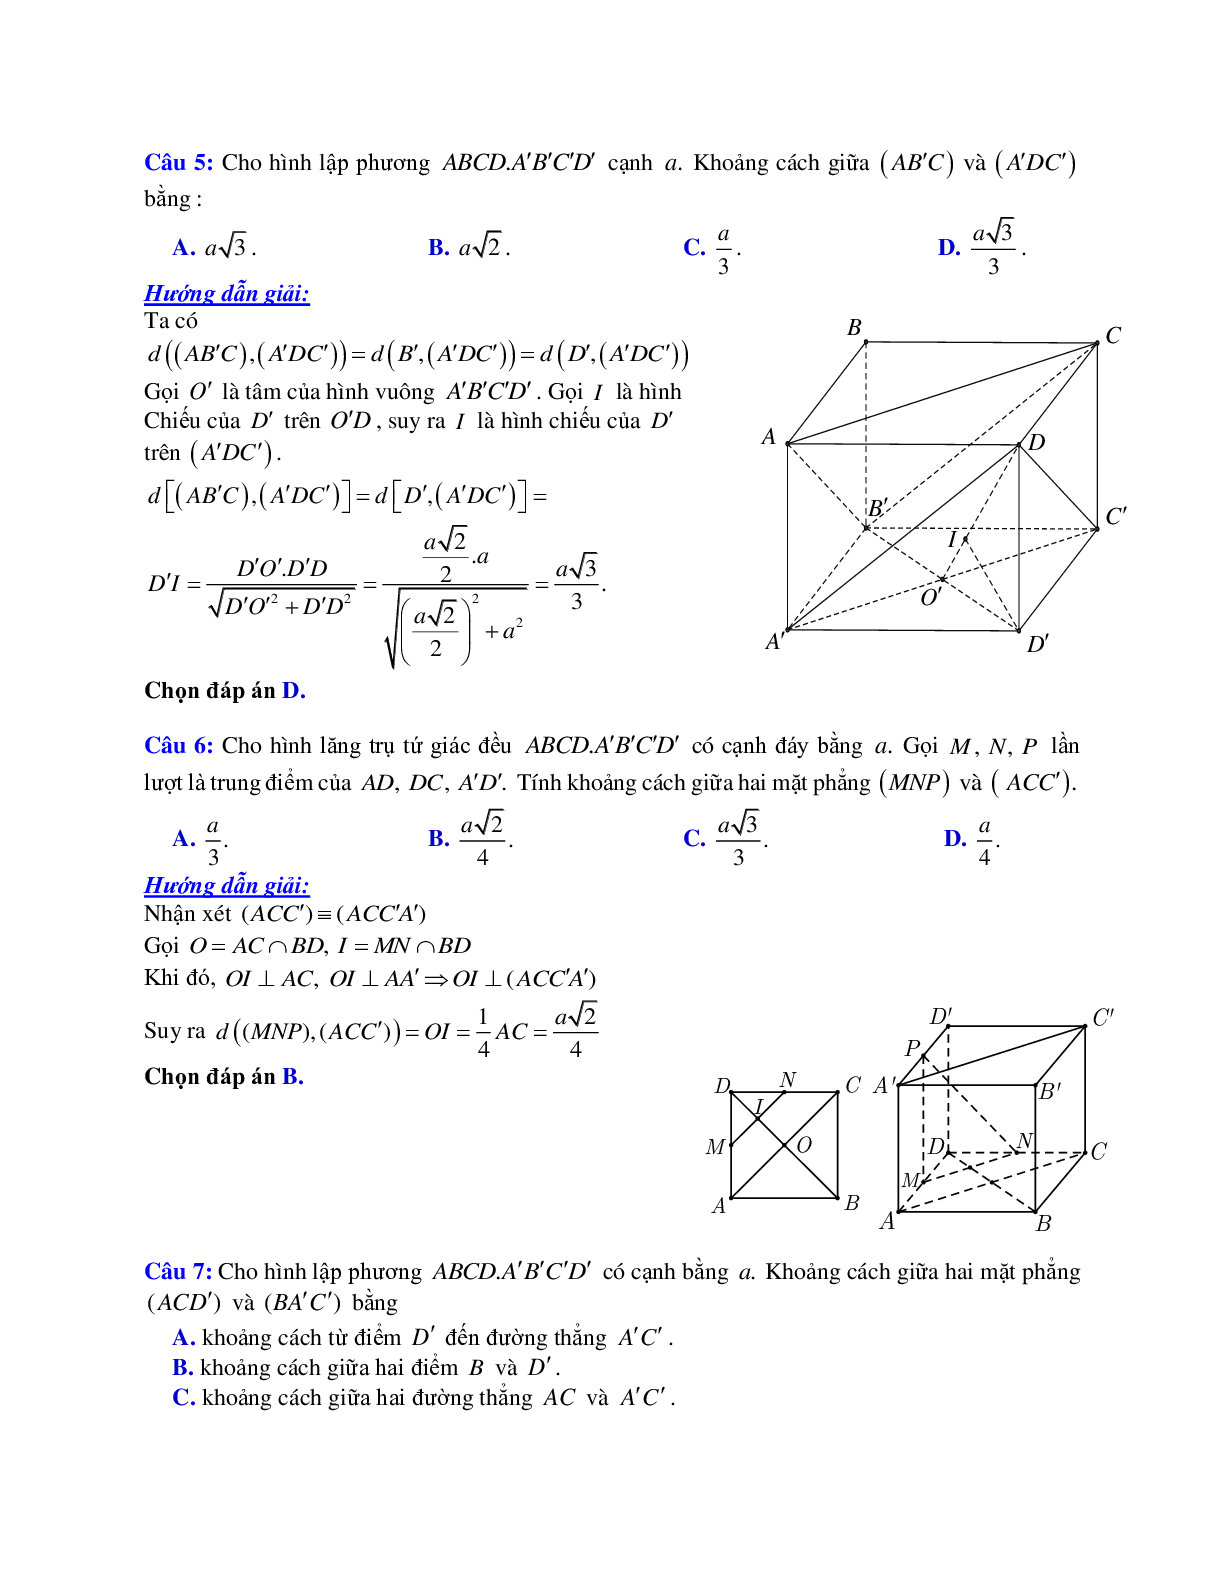 Phương pháp giải và bài tập về Cách tính khoảng cách giữa hai mặt phẳng song song có đáp án (trang 3)